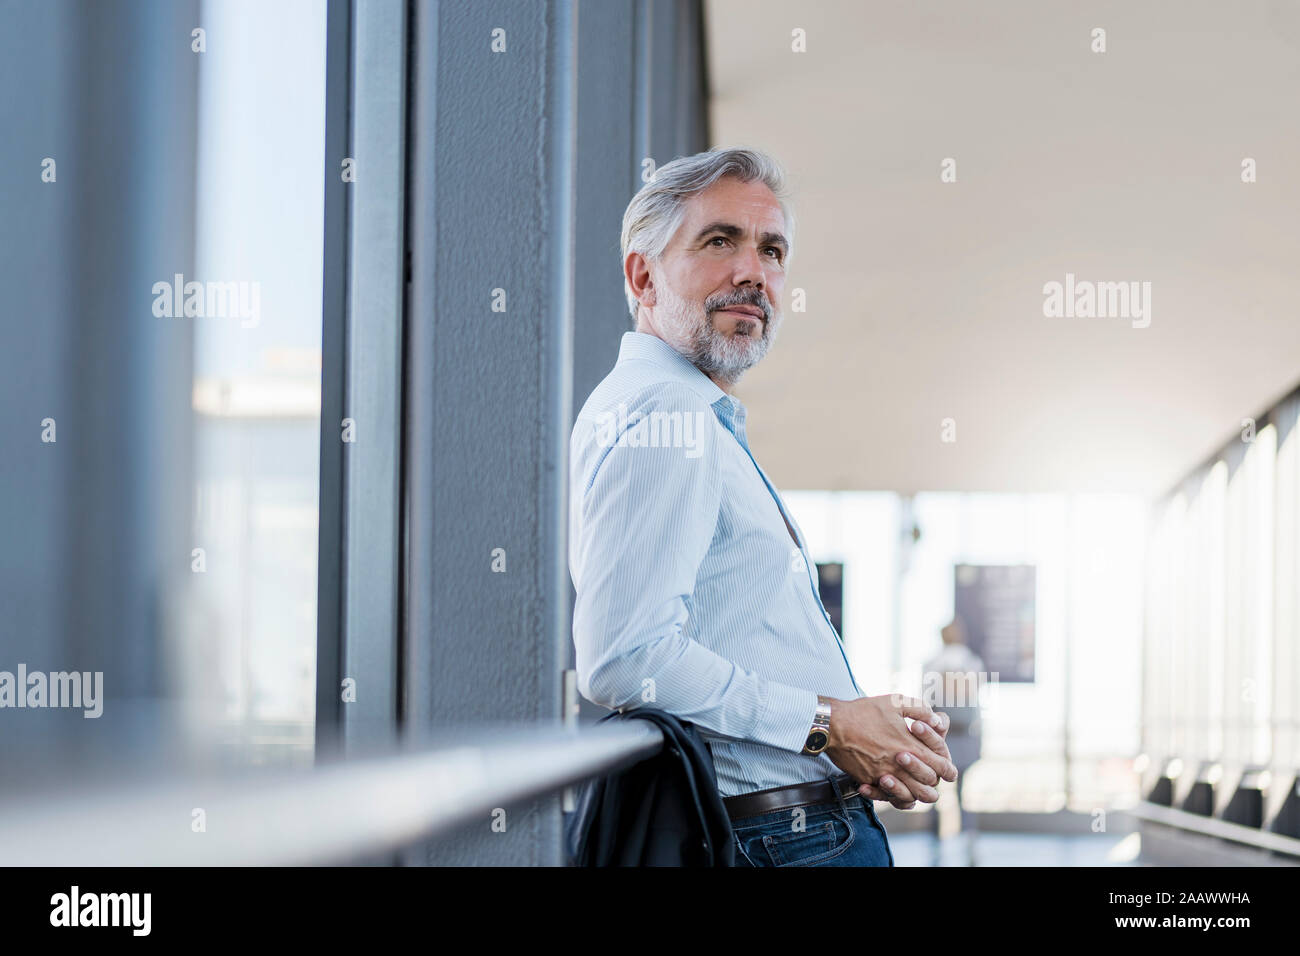 Mature businessman leaning on railing dans une zone de passage Banque D'Images